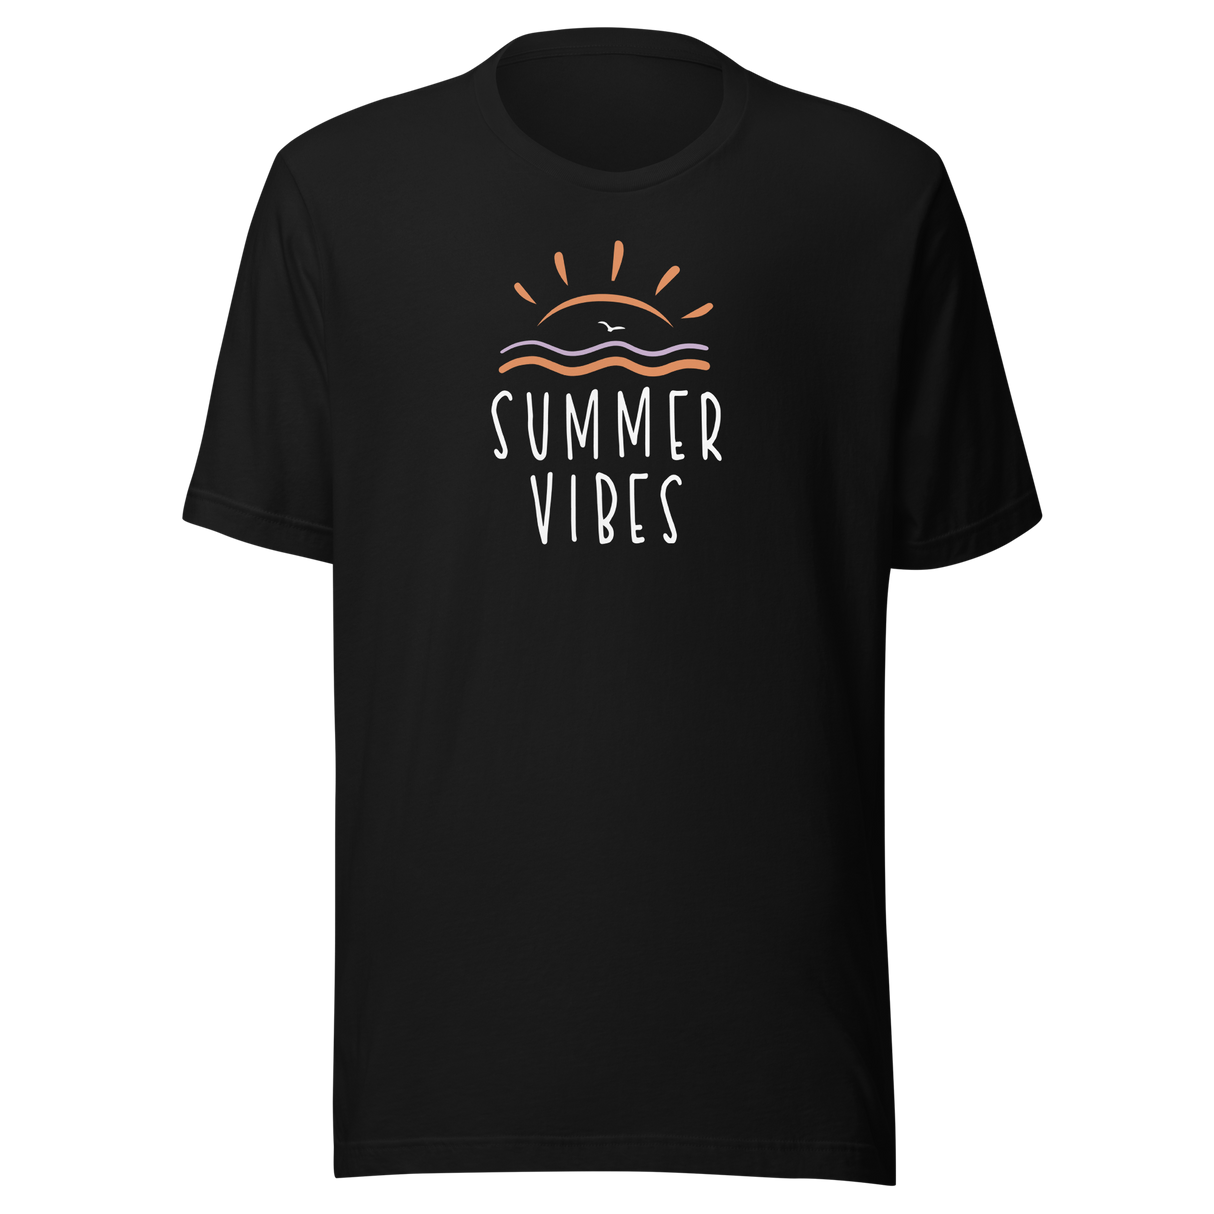 summer-vibes-beach-tee-summer-t-shirt-beach-tee-summer-t-shirt-vibes-tee#color_black